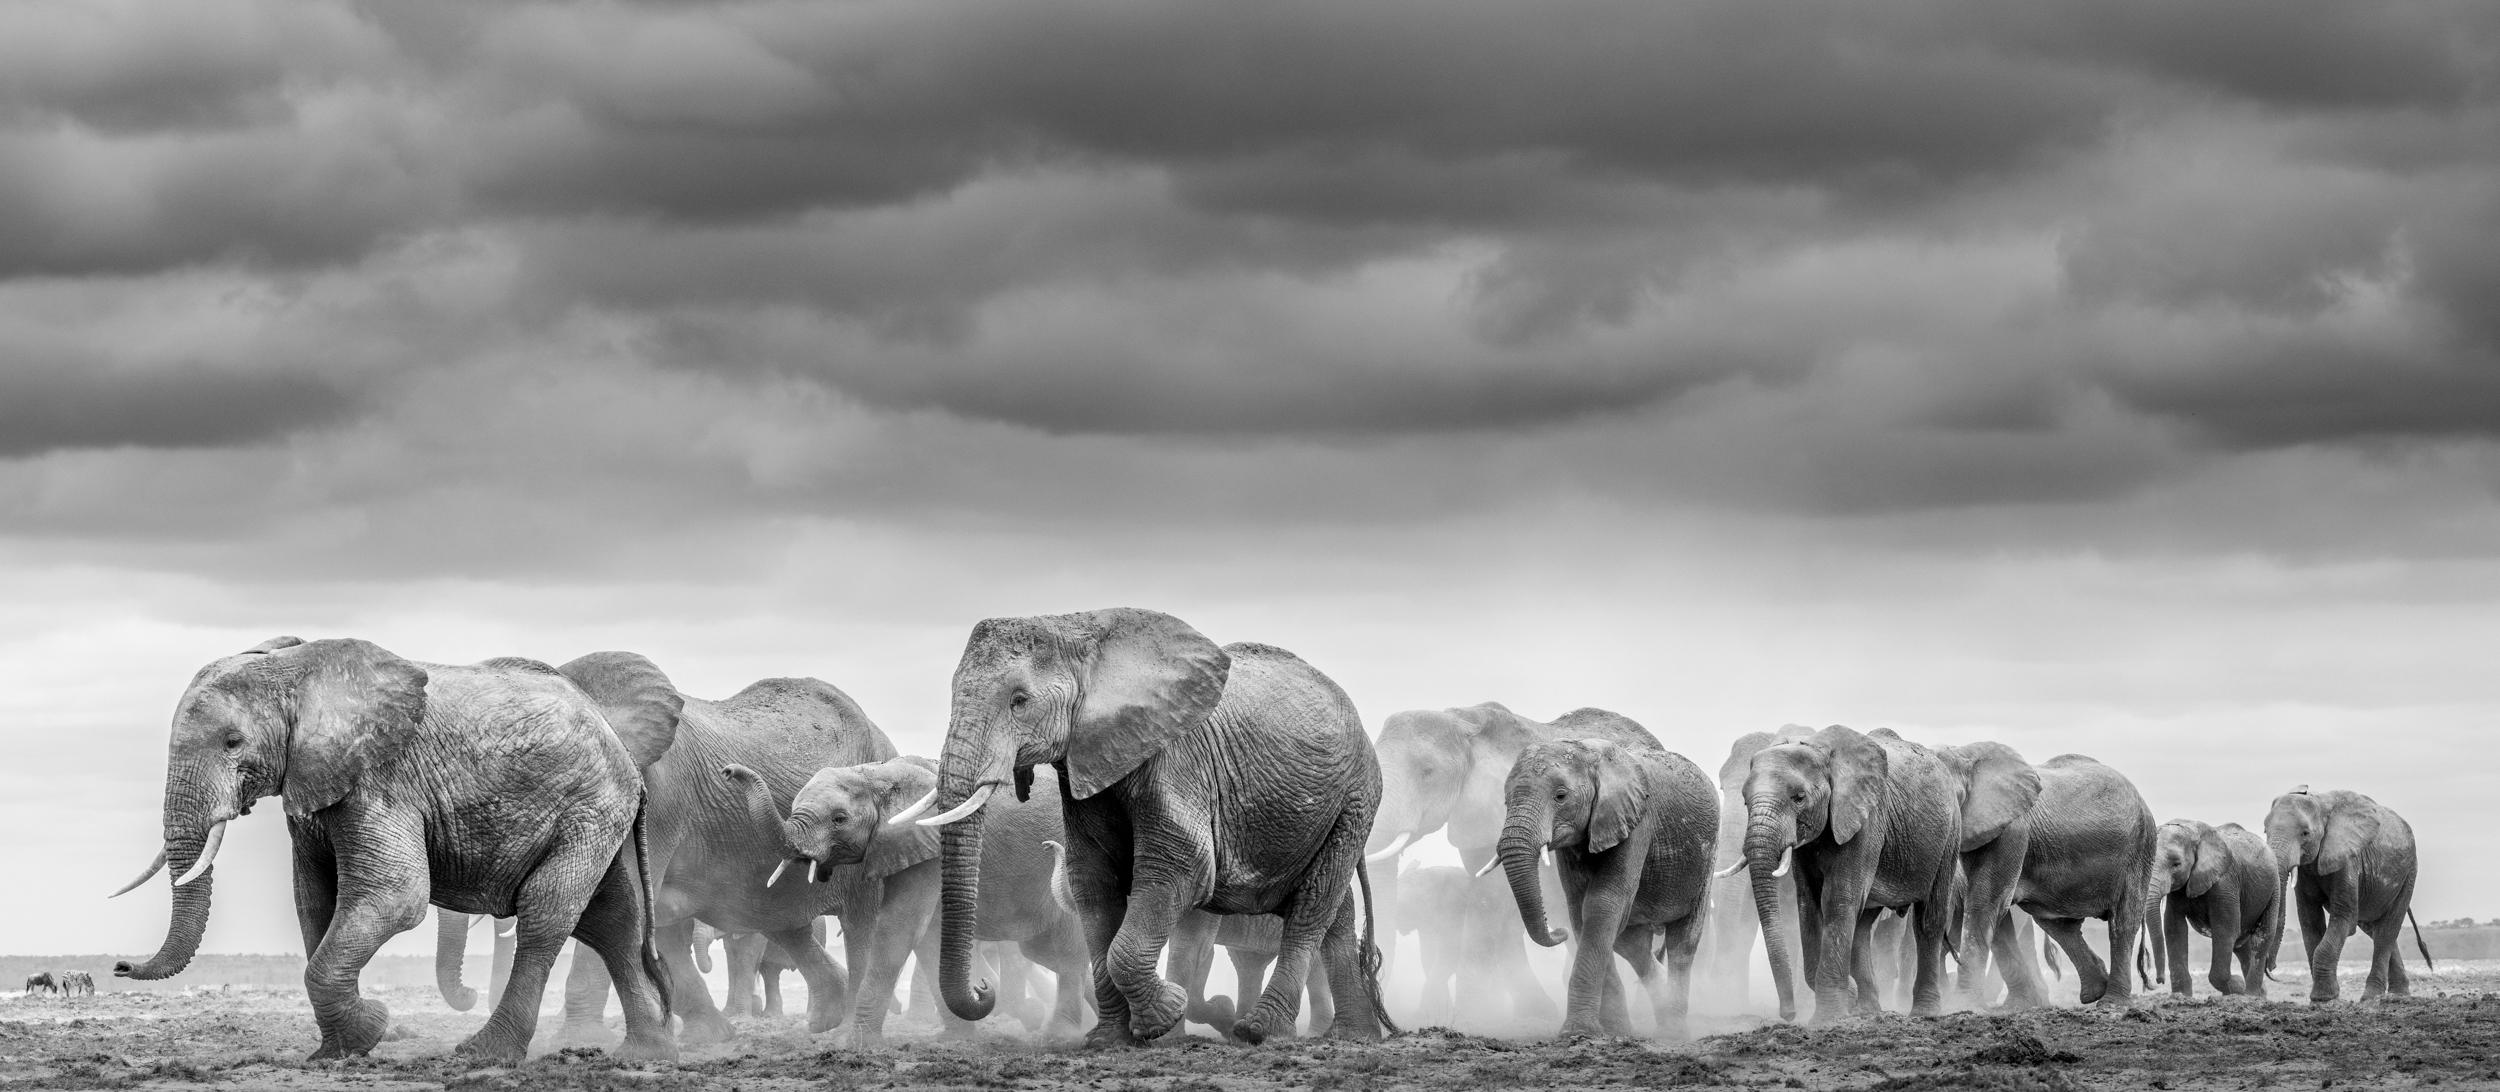 "Amboseli est l'un de mes endroits préférés pour photographier les éléphants. Le paysage en grande partie stérile se prête à mon style photographique, car c'est comme peindre sur une toile vierge. Dans ces grands espaces vides, il est possible de